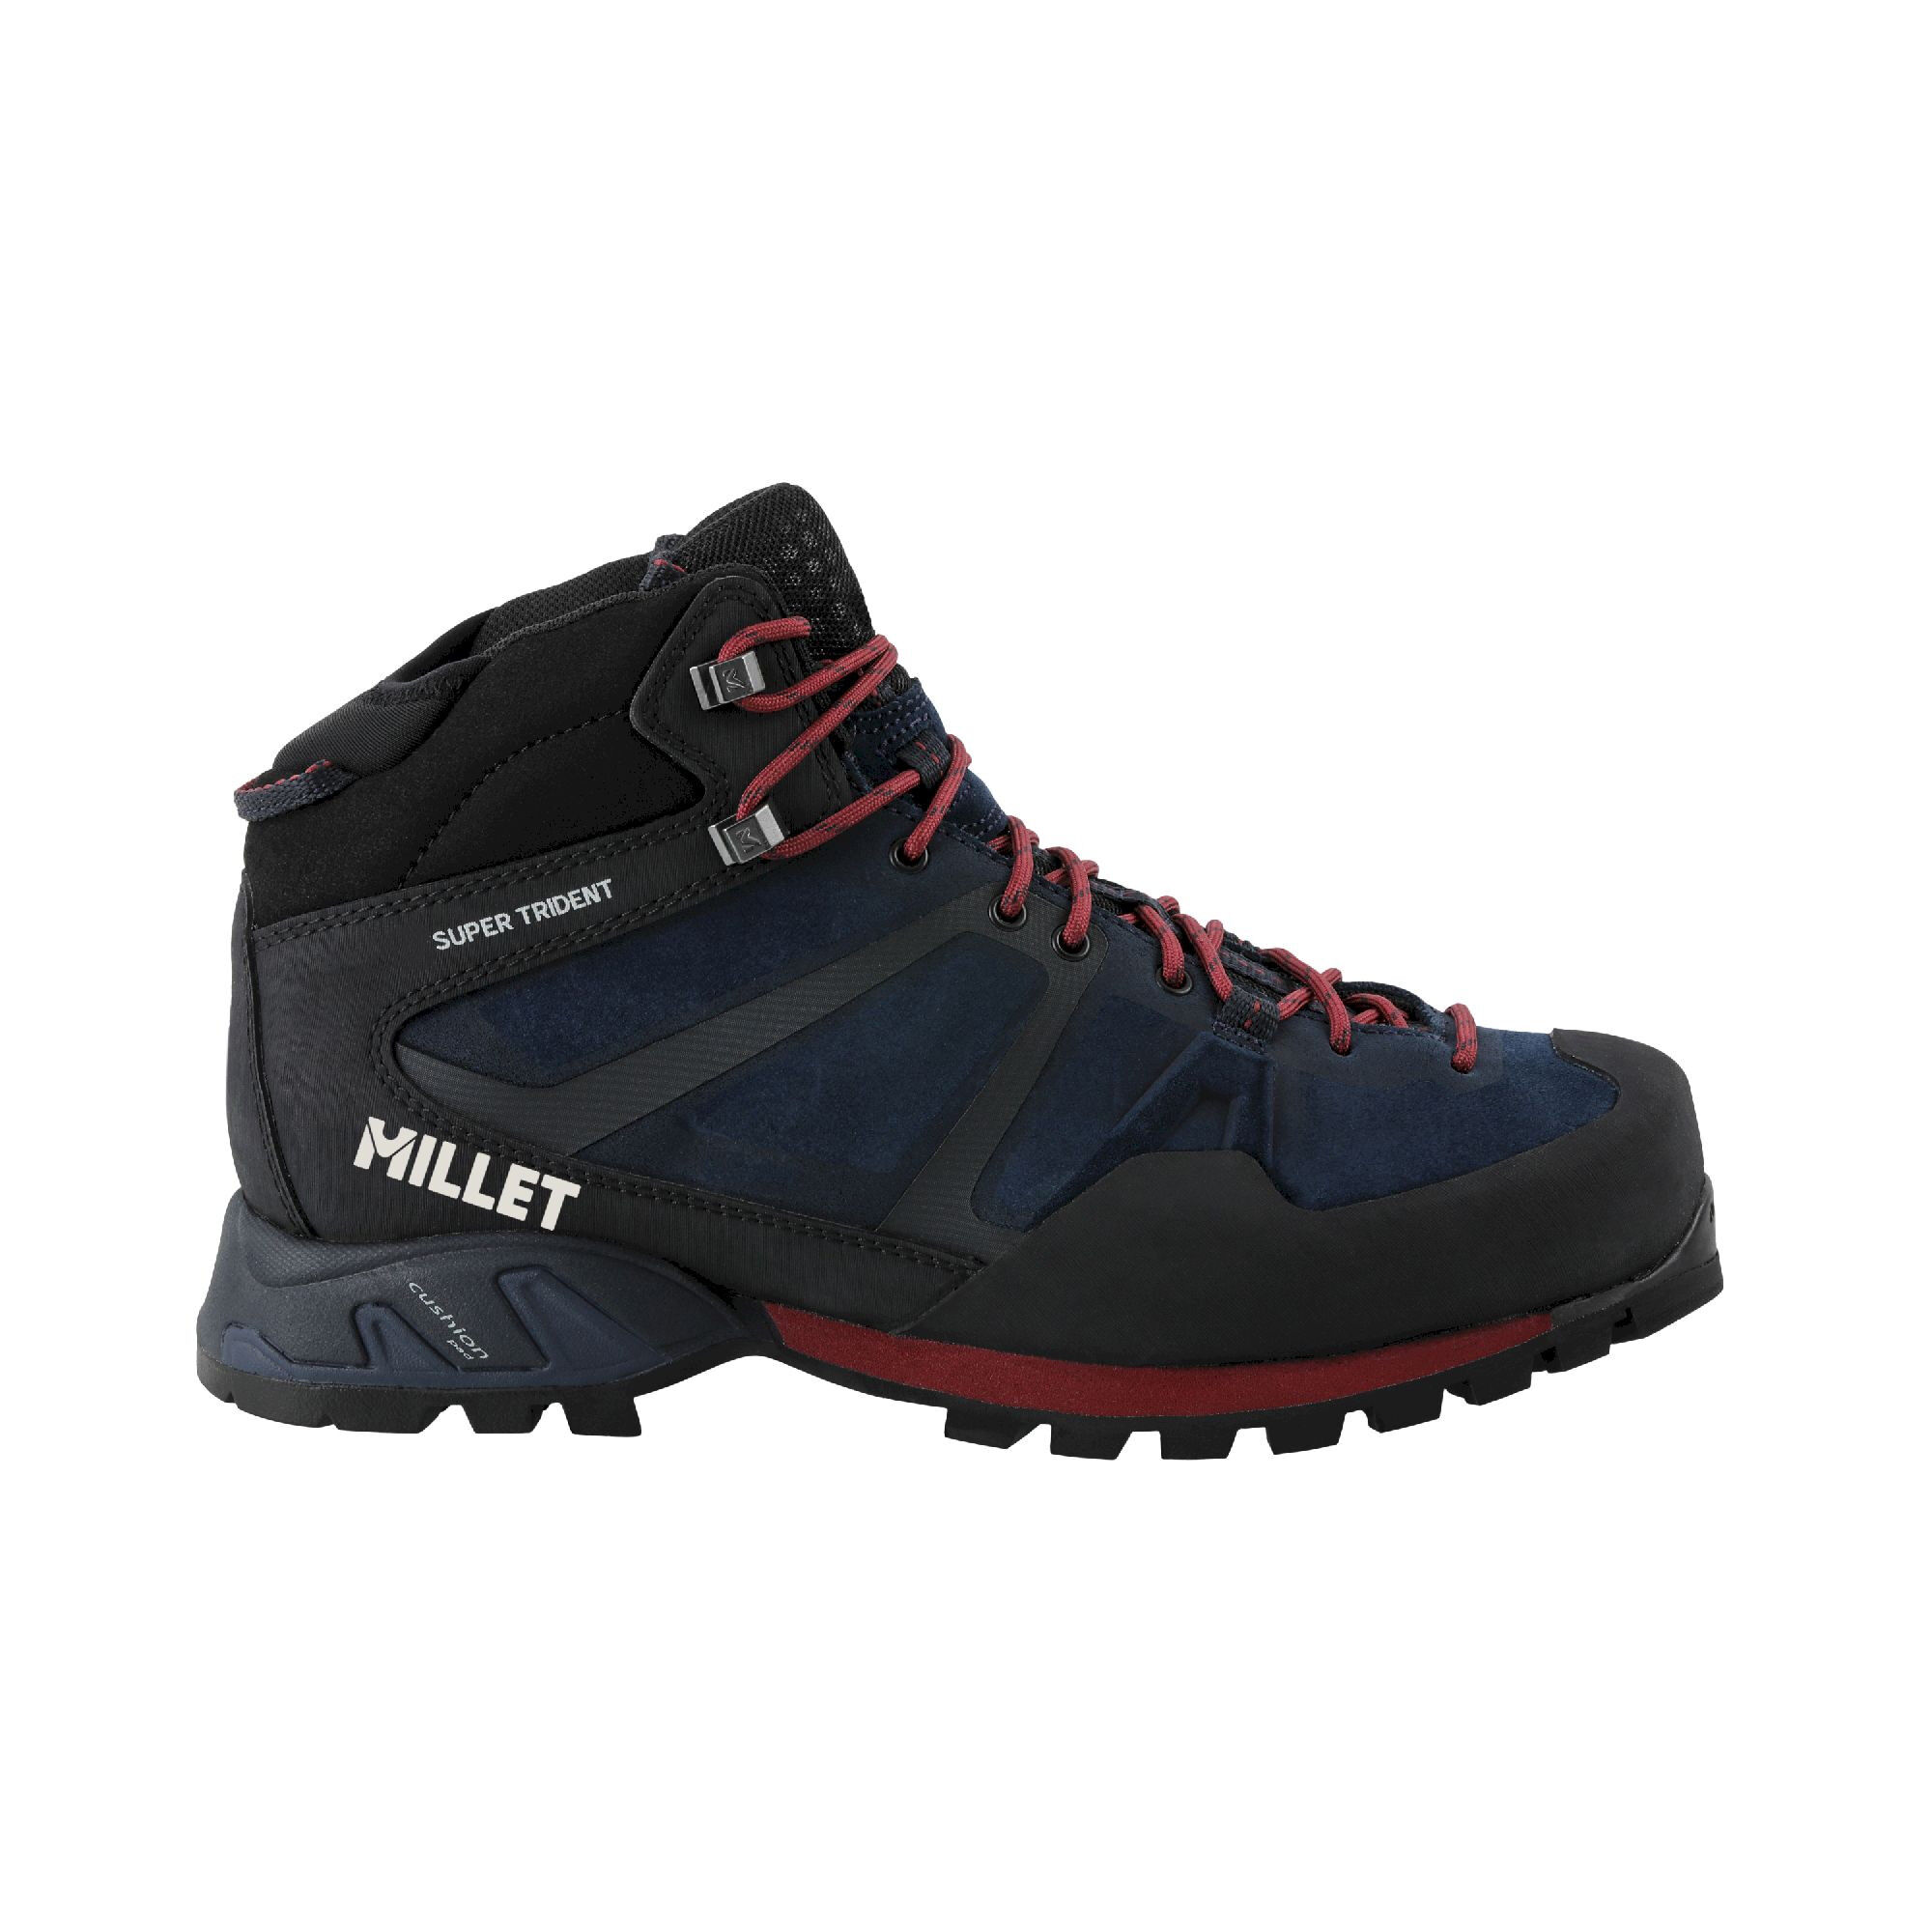 Millet Ld Super Trident Gtx - Hiking Boots Women's